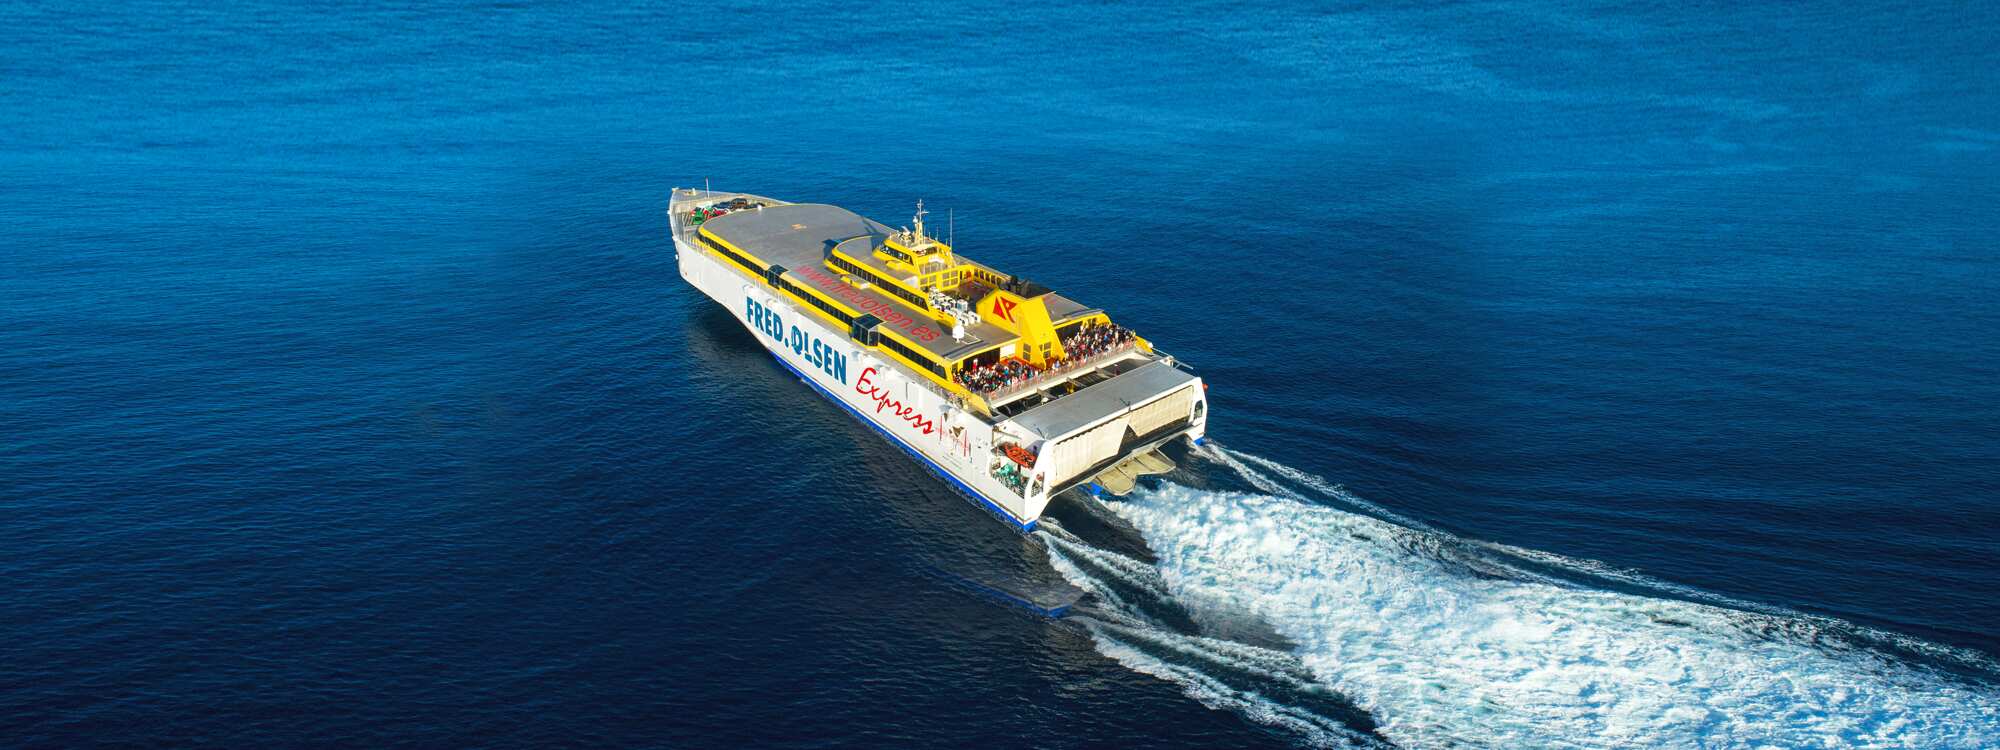 Die Benchijigua Express ist eine Trimaran-Schnellfähre, die von der Reederei Fred. Olsen Express zwischen den kanarischen Inseln Teneriffa, La Gomera und La Palma im Atlantik eingesetzt wird.